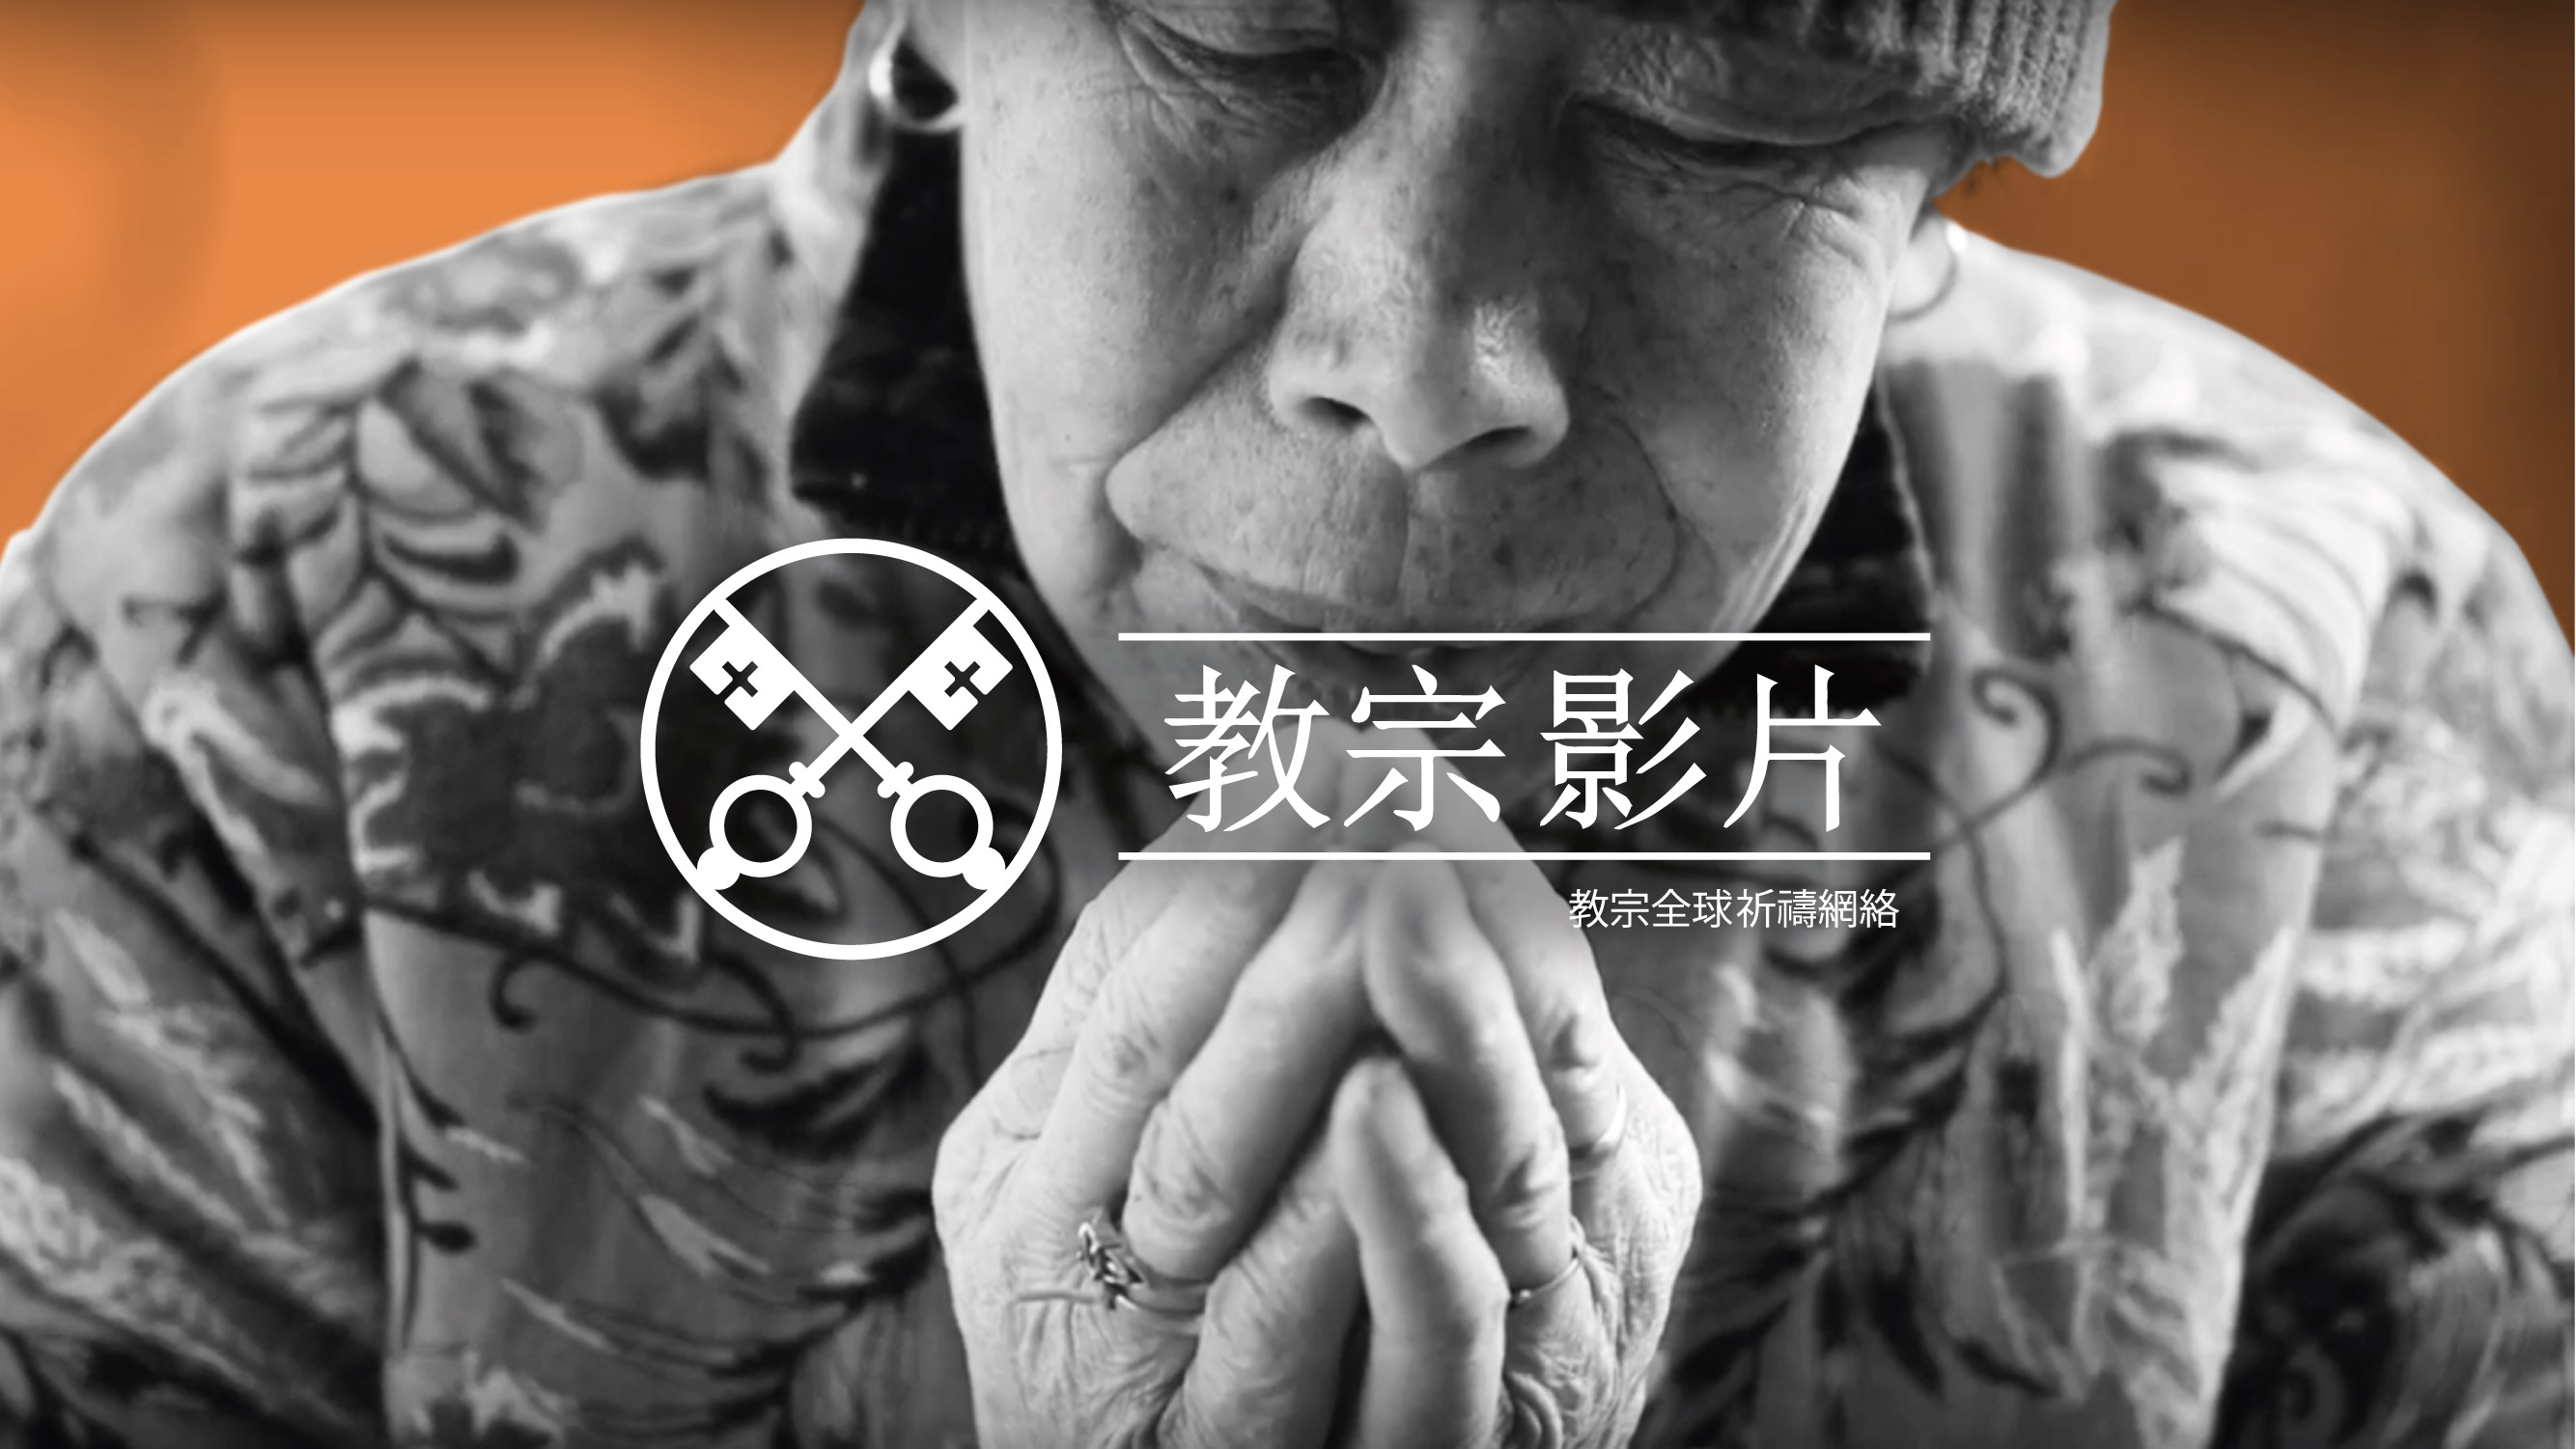 三月 : 為中國的天主教徒